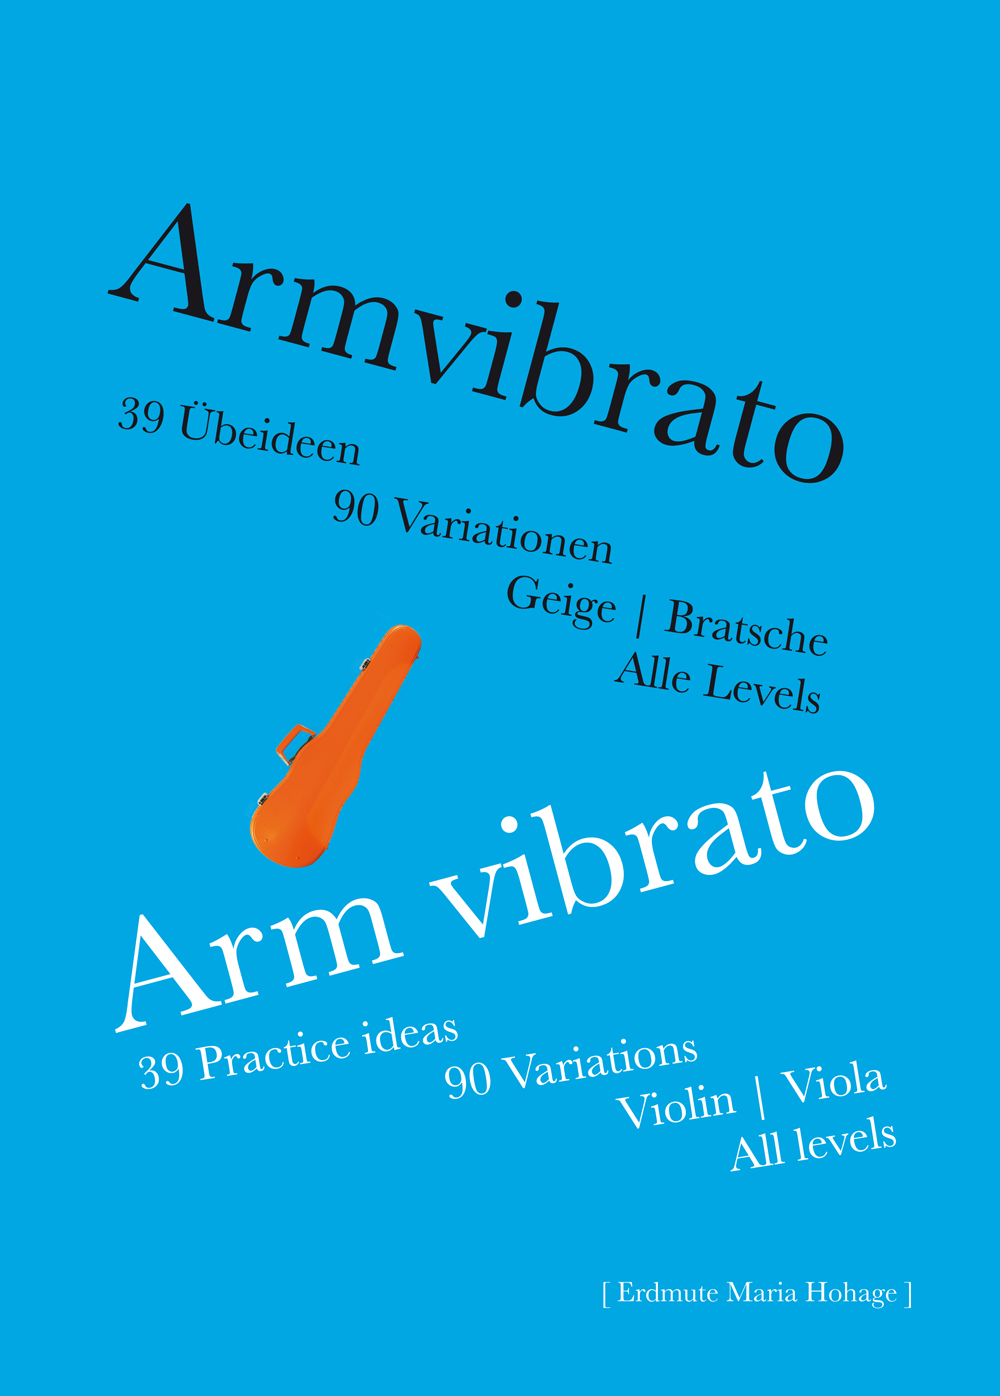 Armvibrato für Violine und Viola